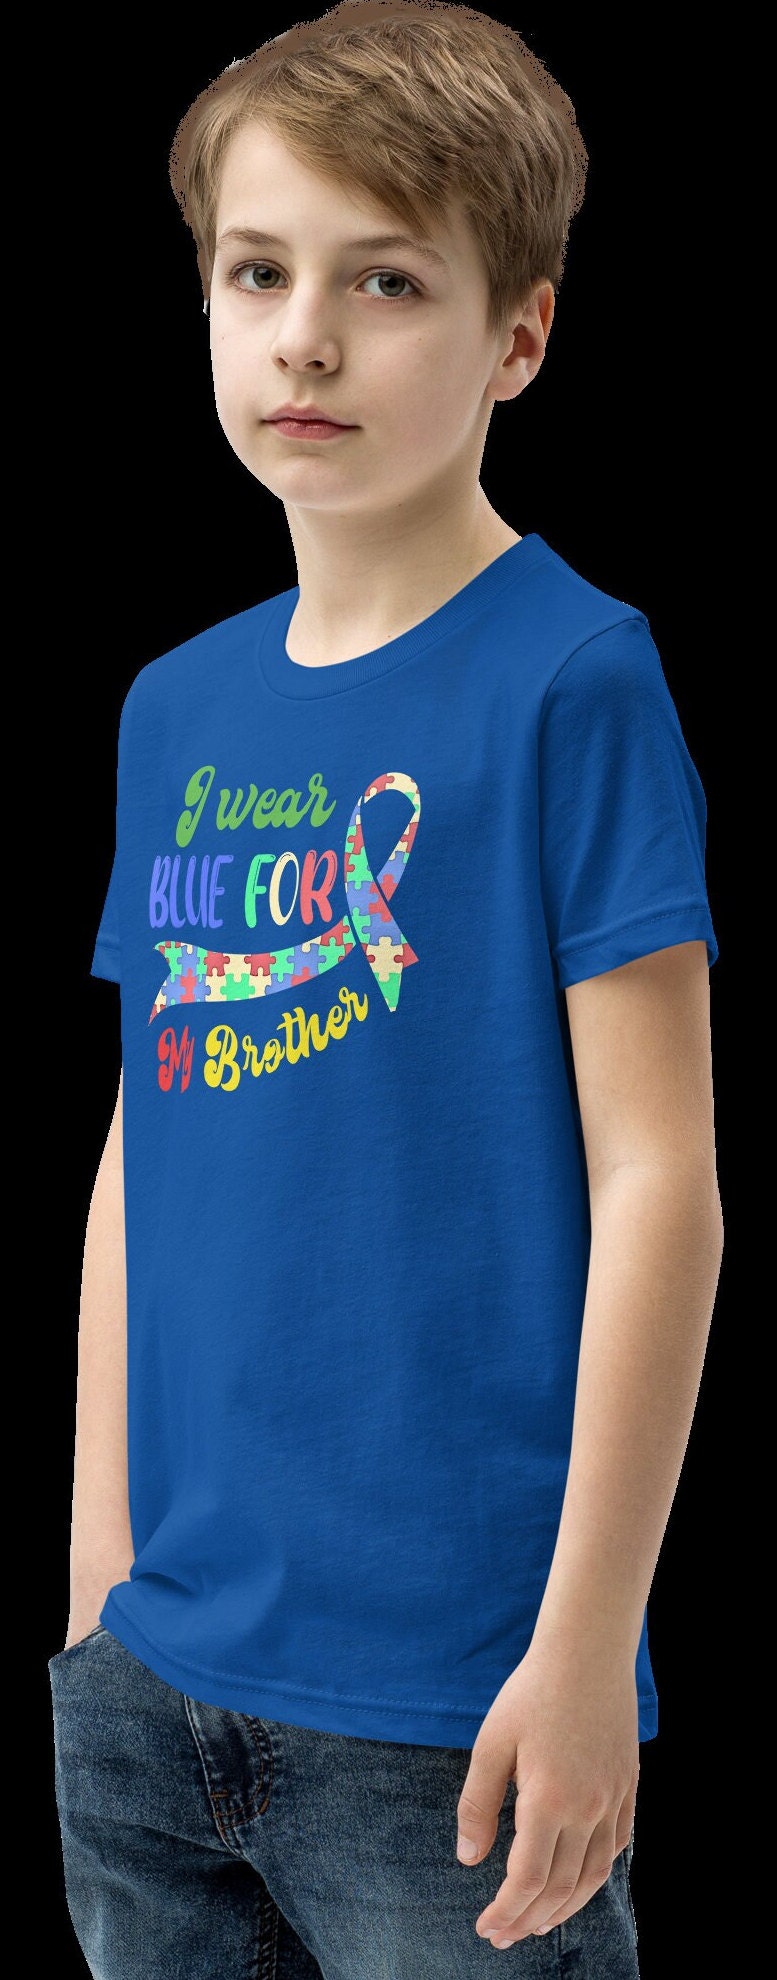 Autism Awareness Tee, I Wear Blue, Autism Awareness Shirt, Autism Mom Shirt, Puzzle Piece T-Shirt, Autism Support Shirt, Autism Month Shirt